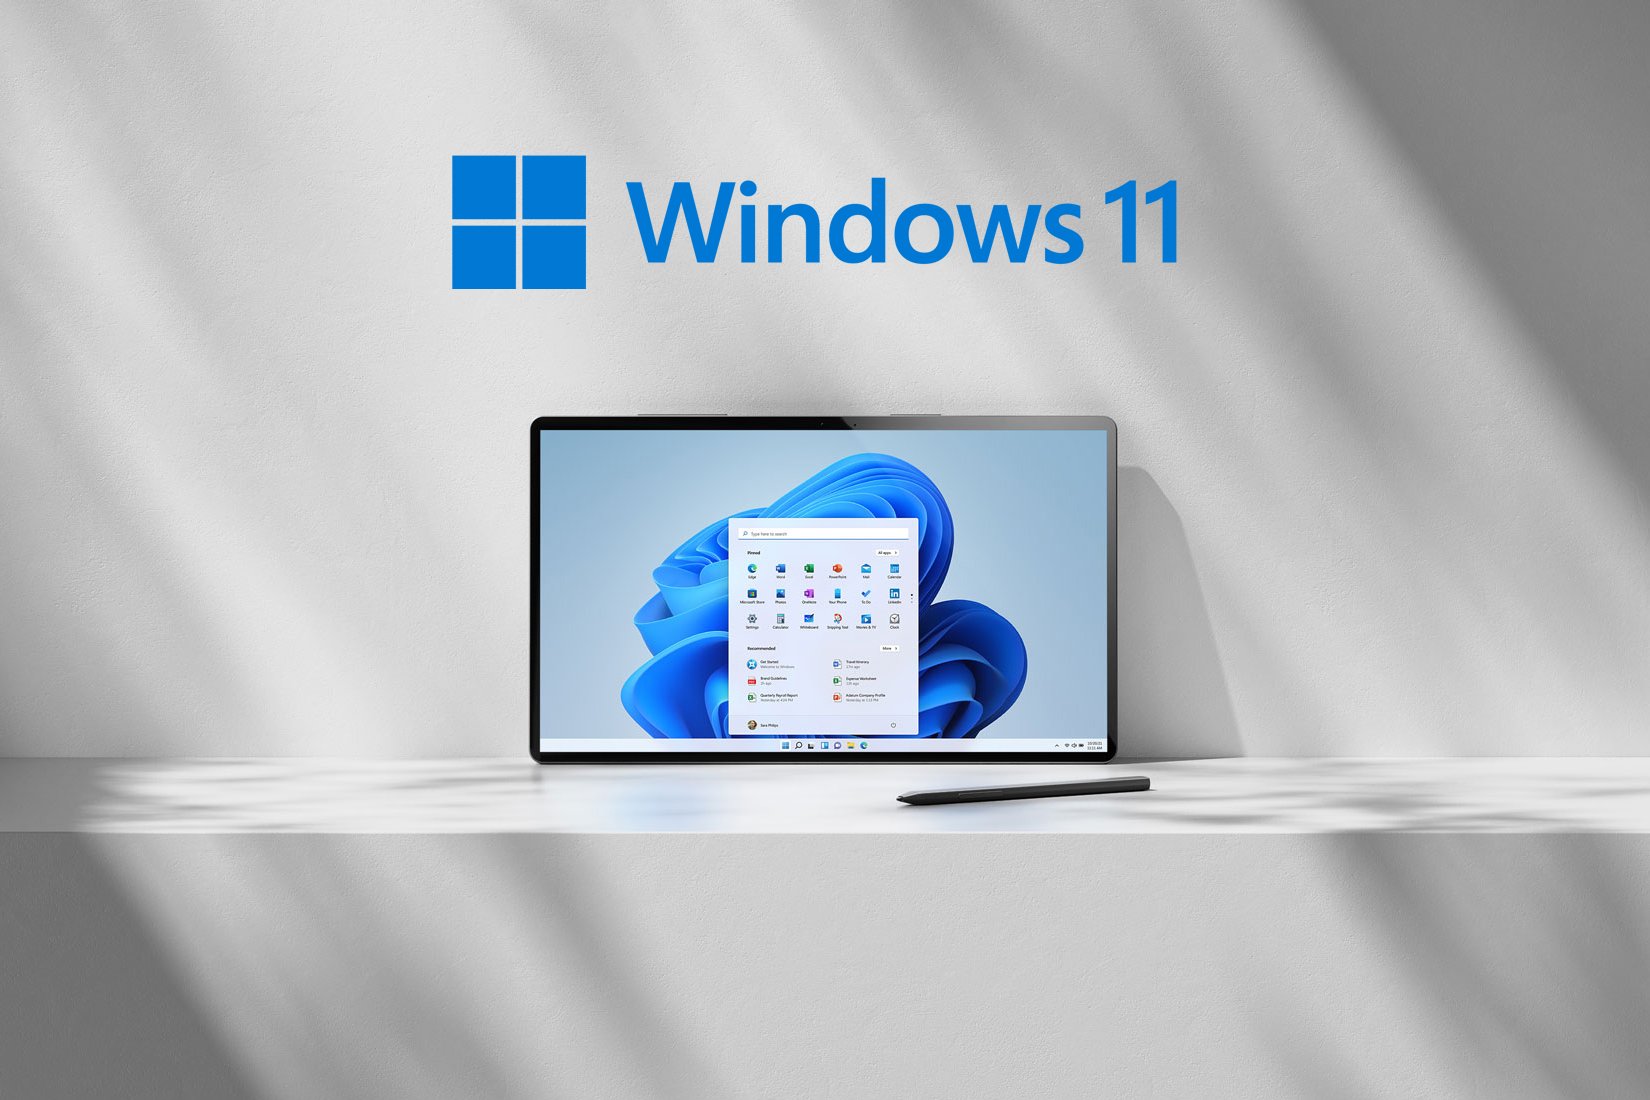 Windows 11 poderá ser instalado em computadores antigos, confirma Microsoft. (Fonte: Microsoft, The Verge / Reprodução)